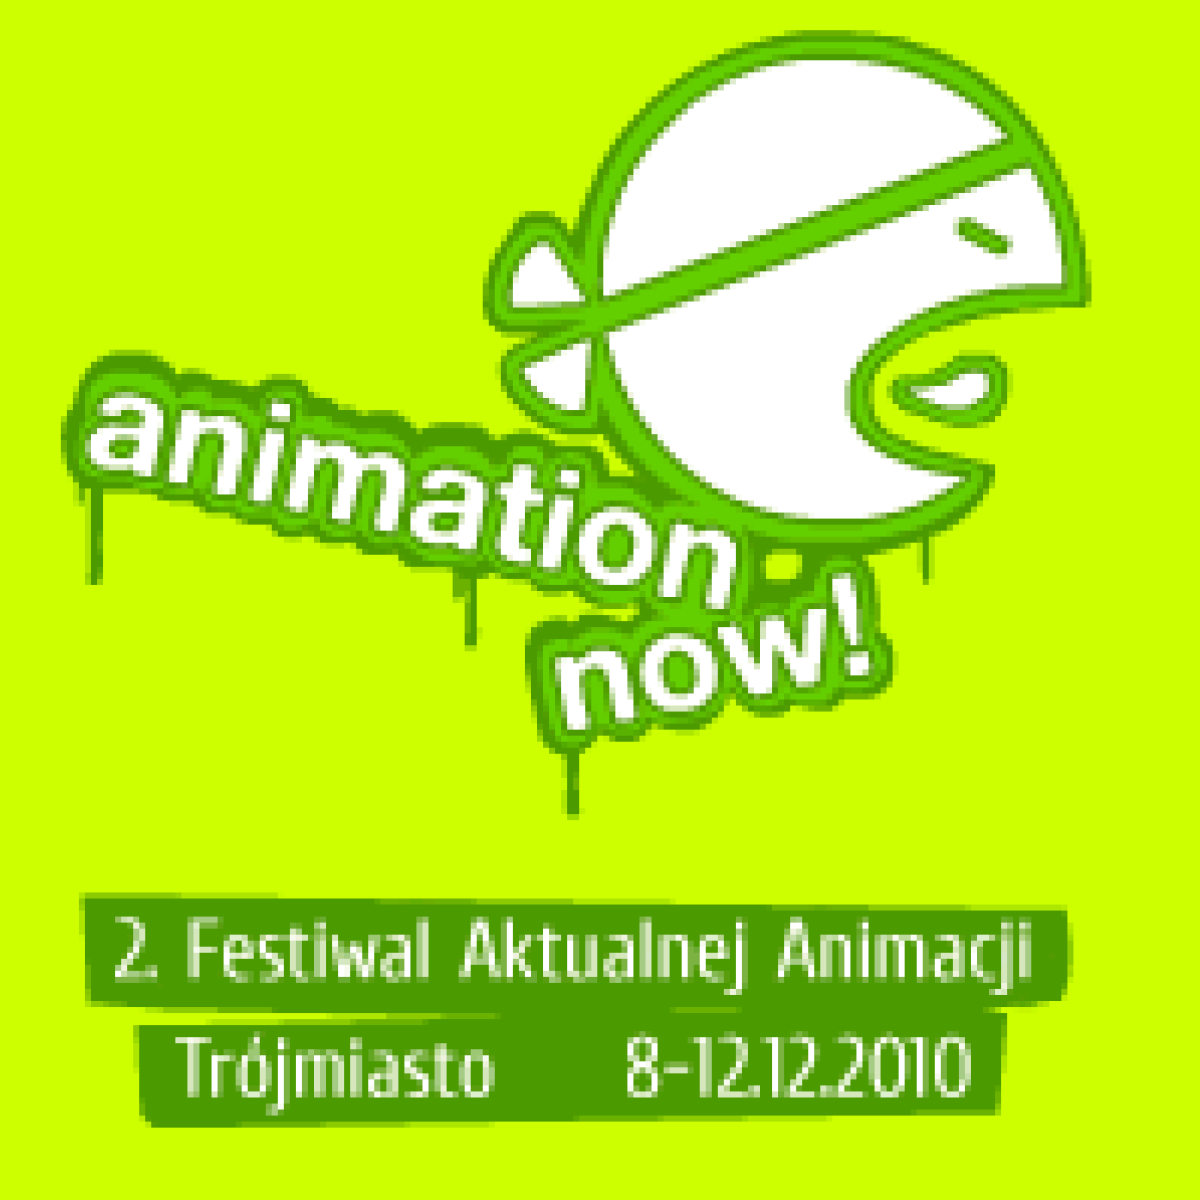 Animation now! Trójmiasto